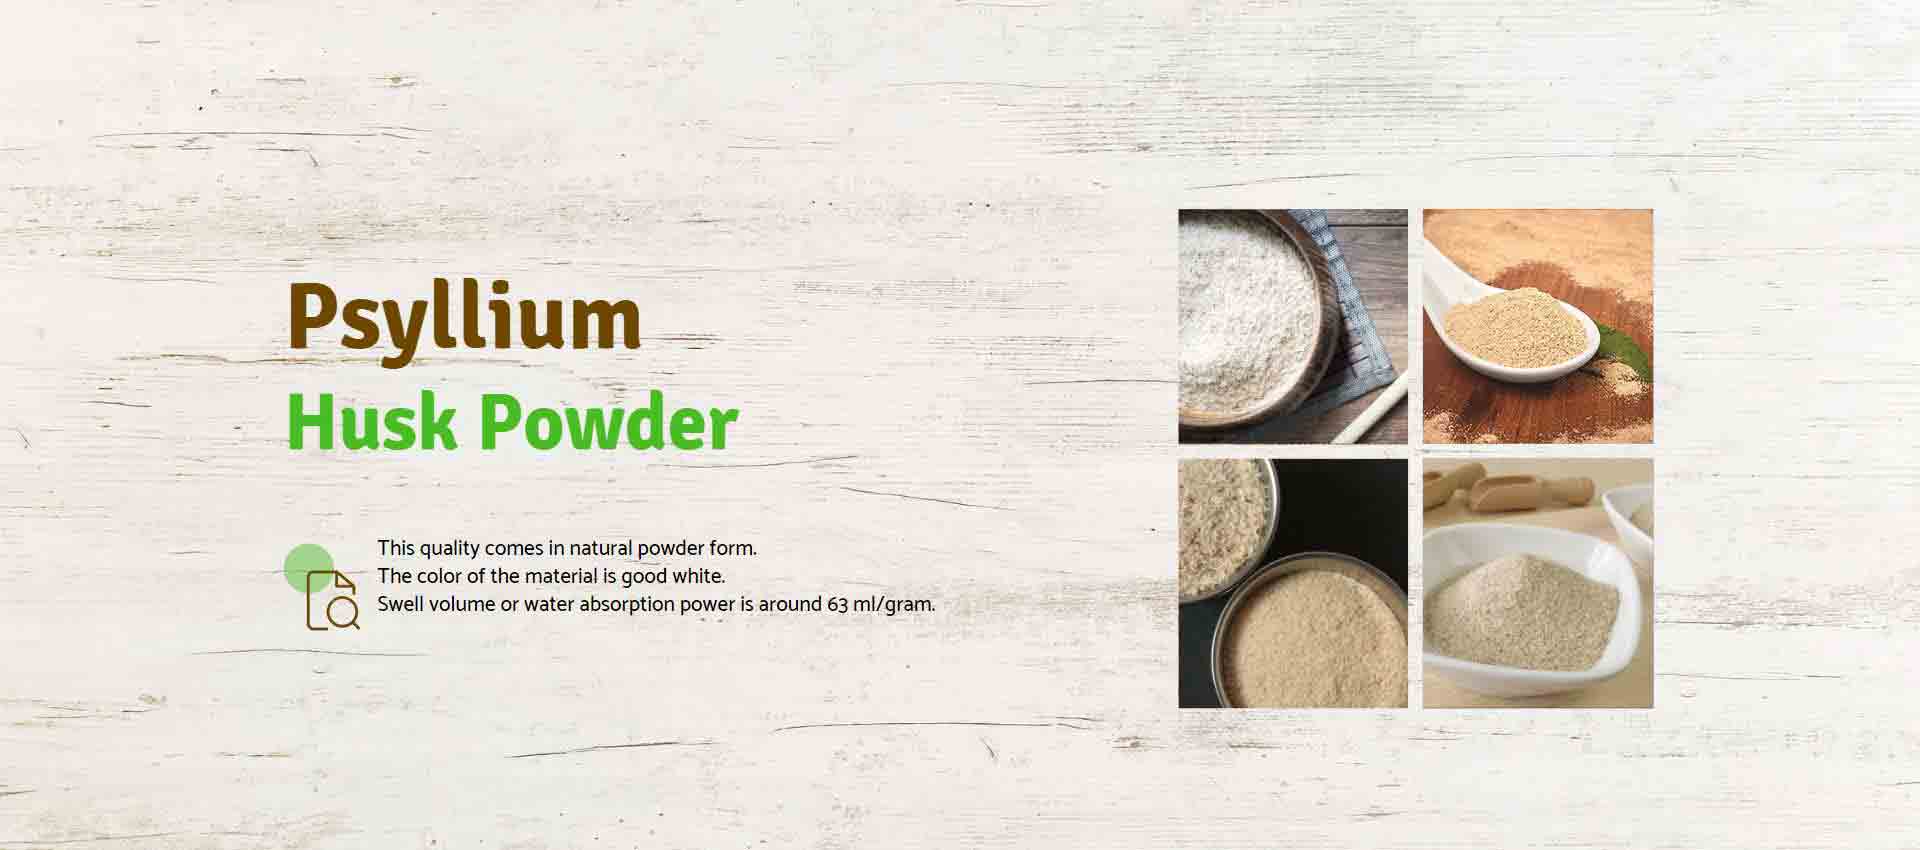 Psyllium Husk Powder Manufacturers in Turkey